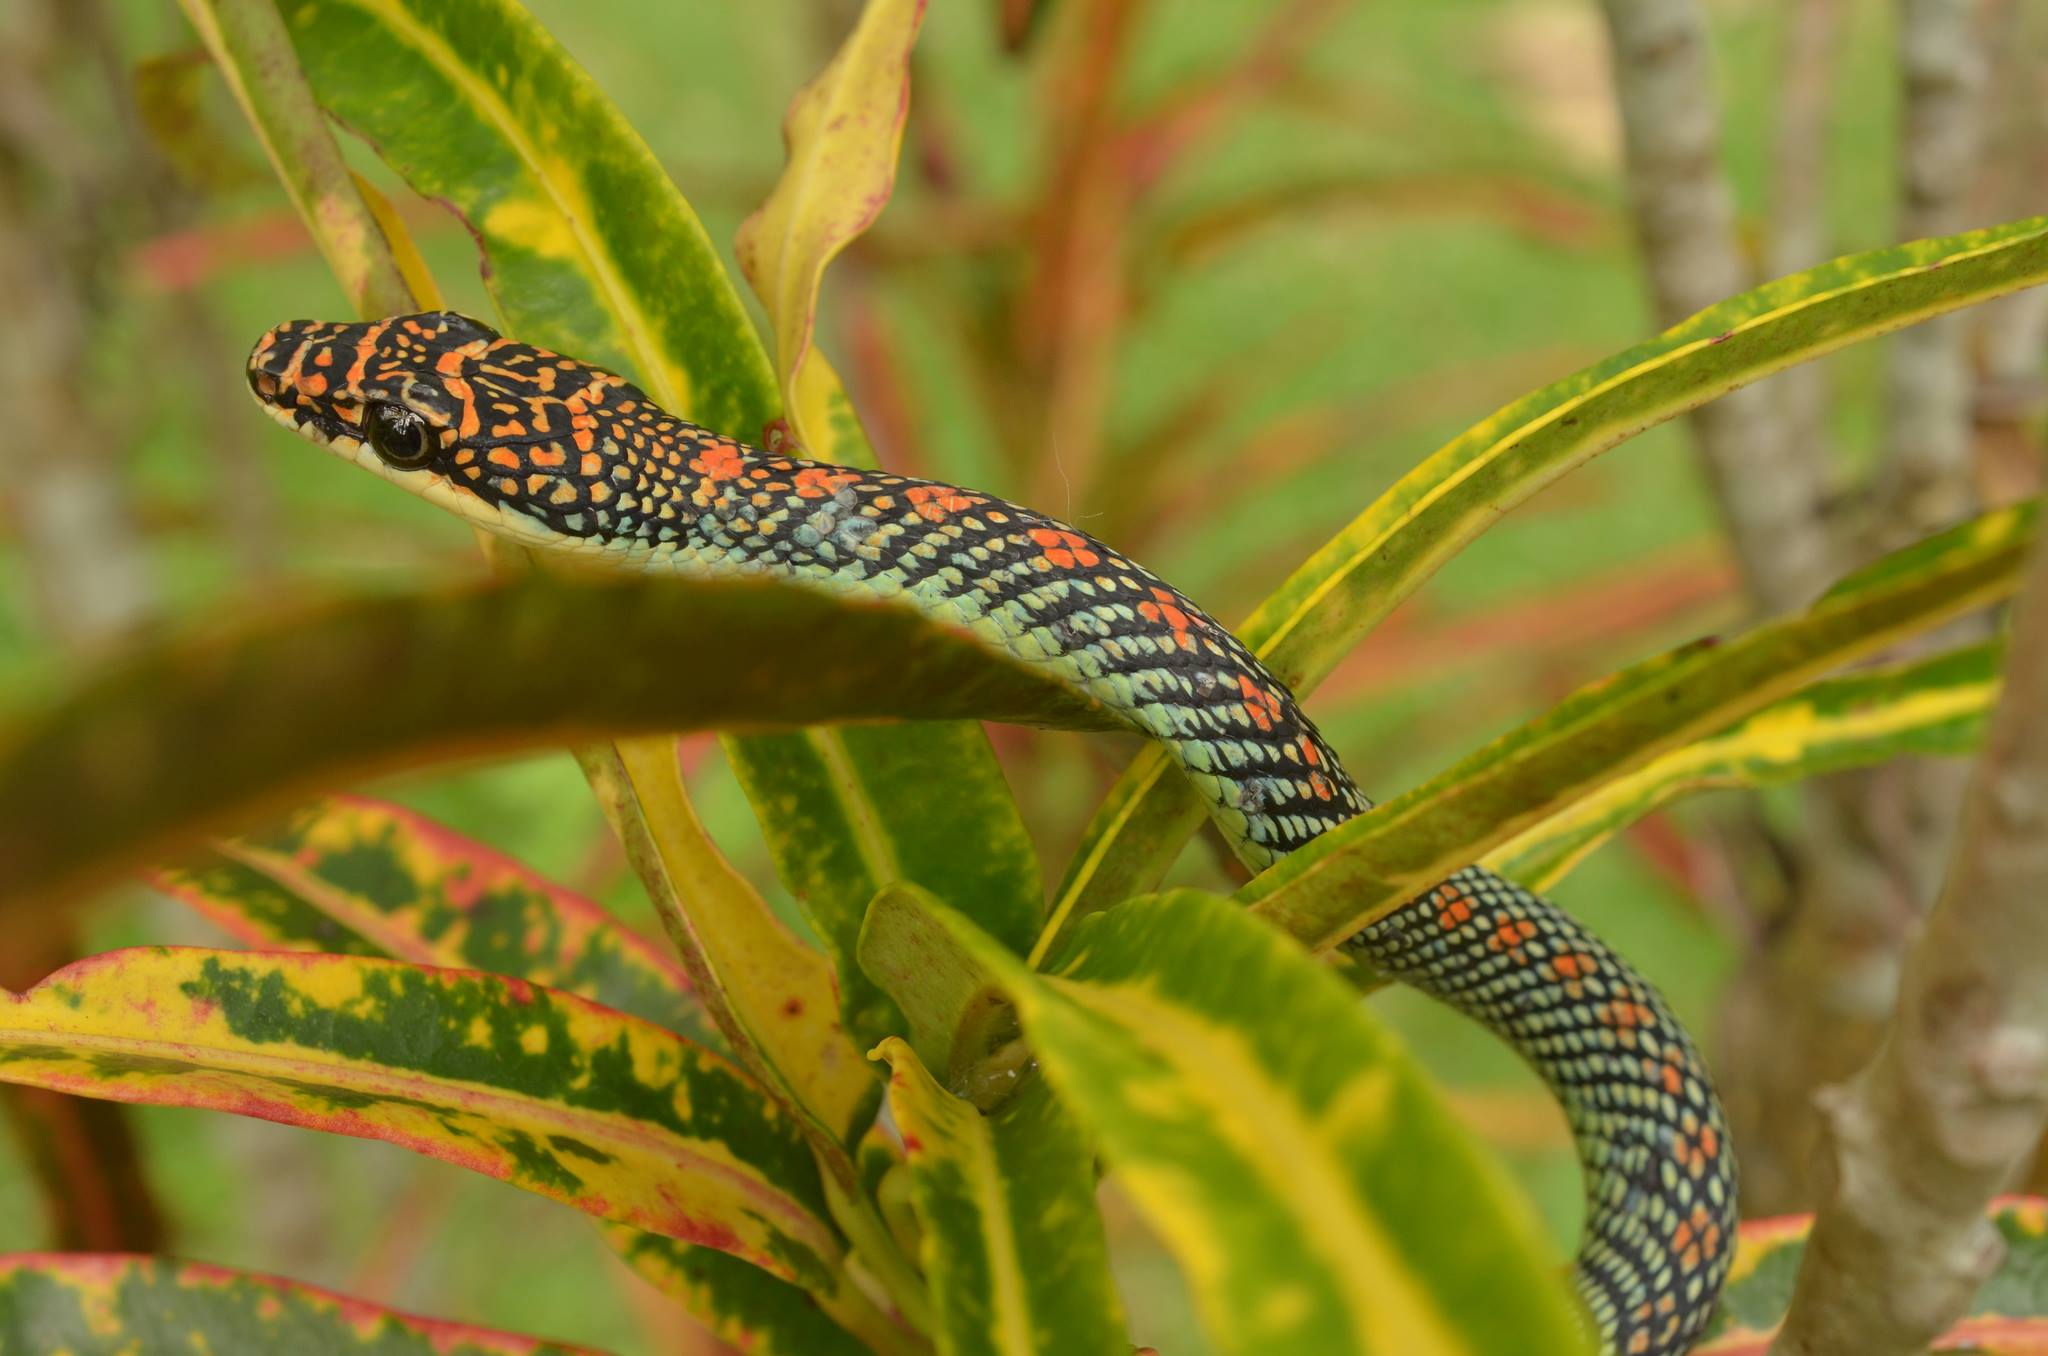 Paradise tree snake in bush in Thailand. ©Vern Lovic.